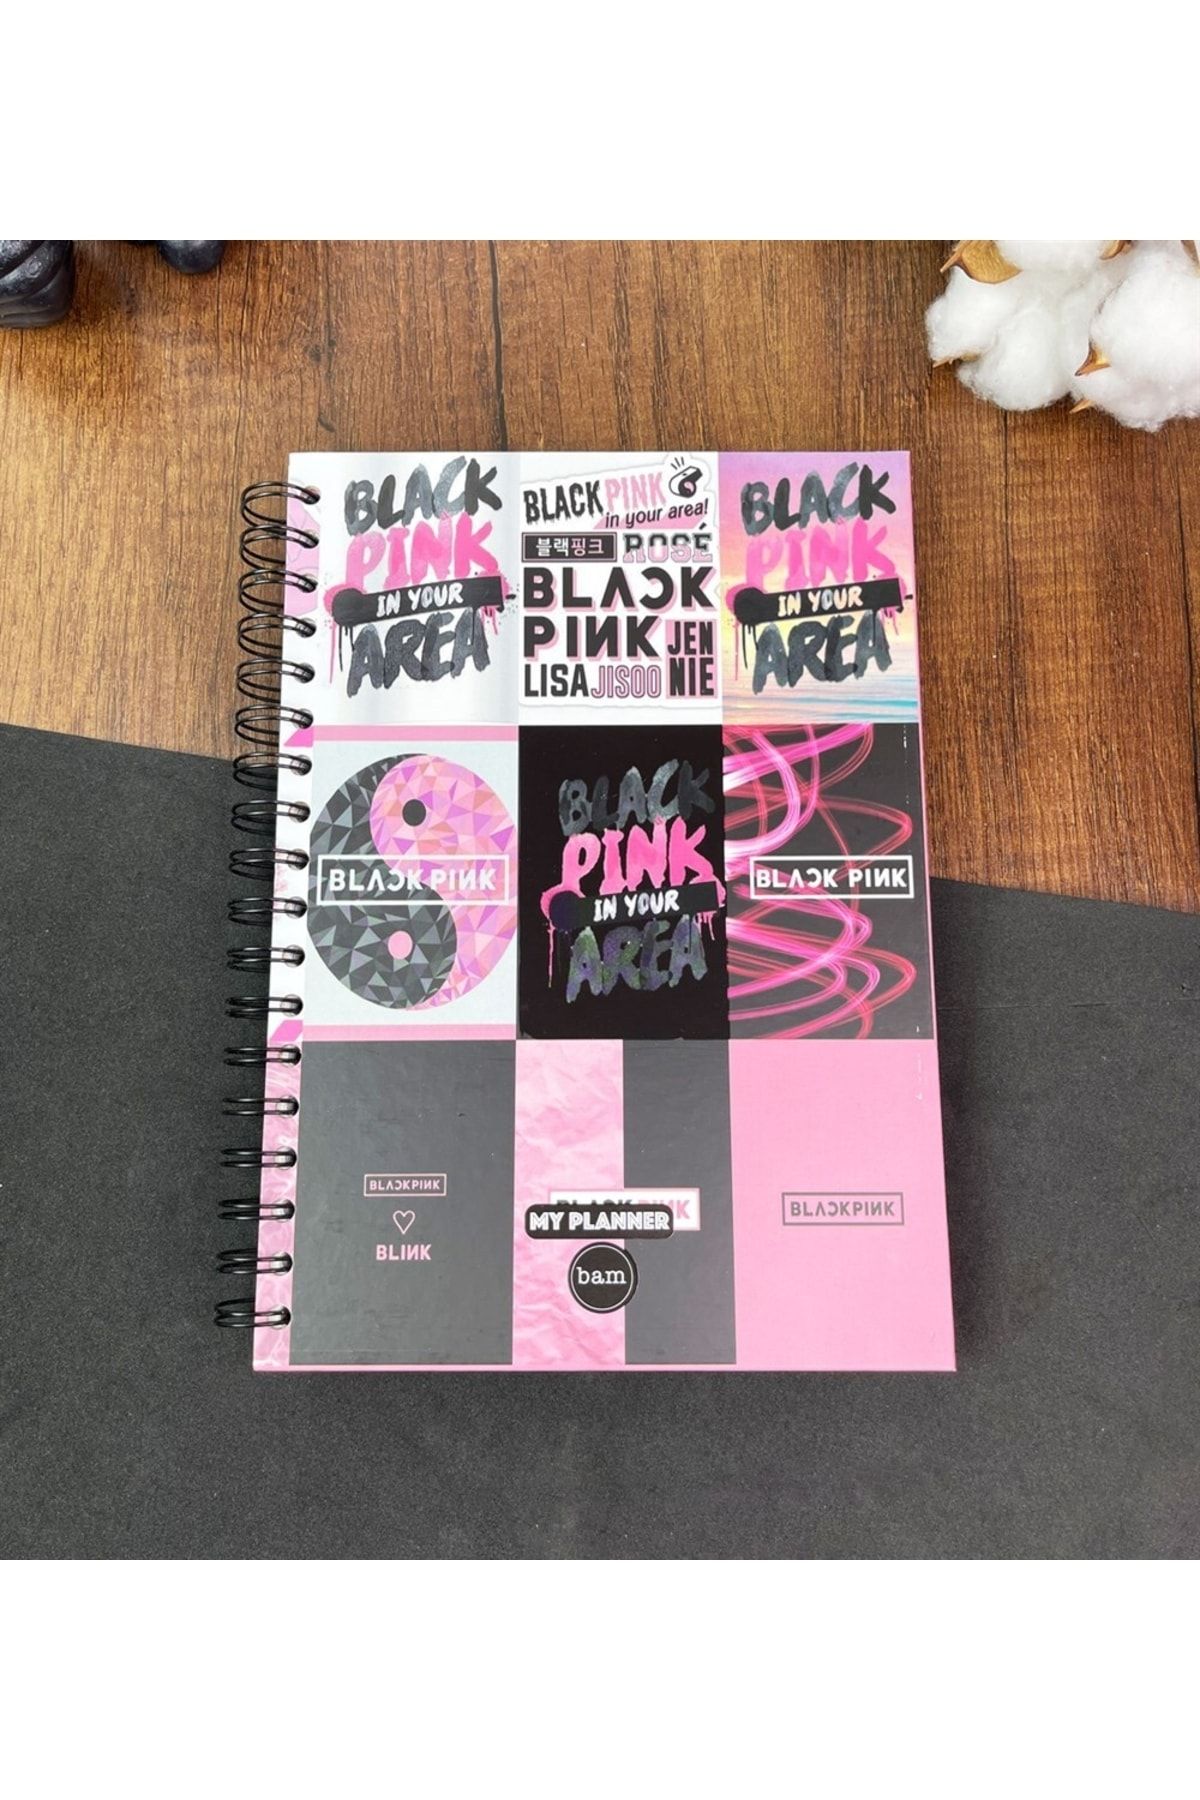 Patladı Gitti Black Pink Tasarımlı Spiralli Sticker'lı Tarihsiz Konuşan Ajanda Haftalık Planlayıcı Defter